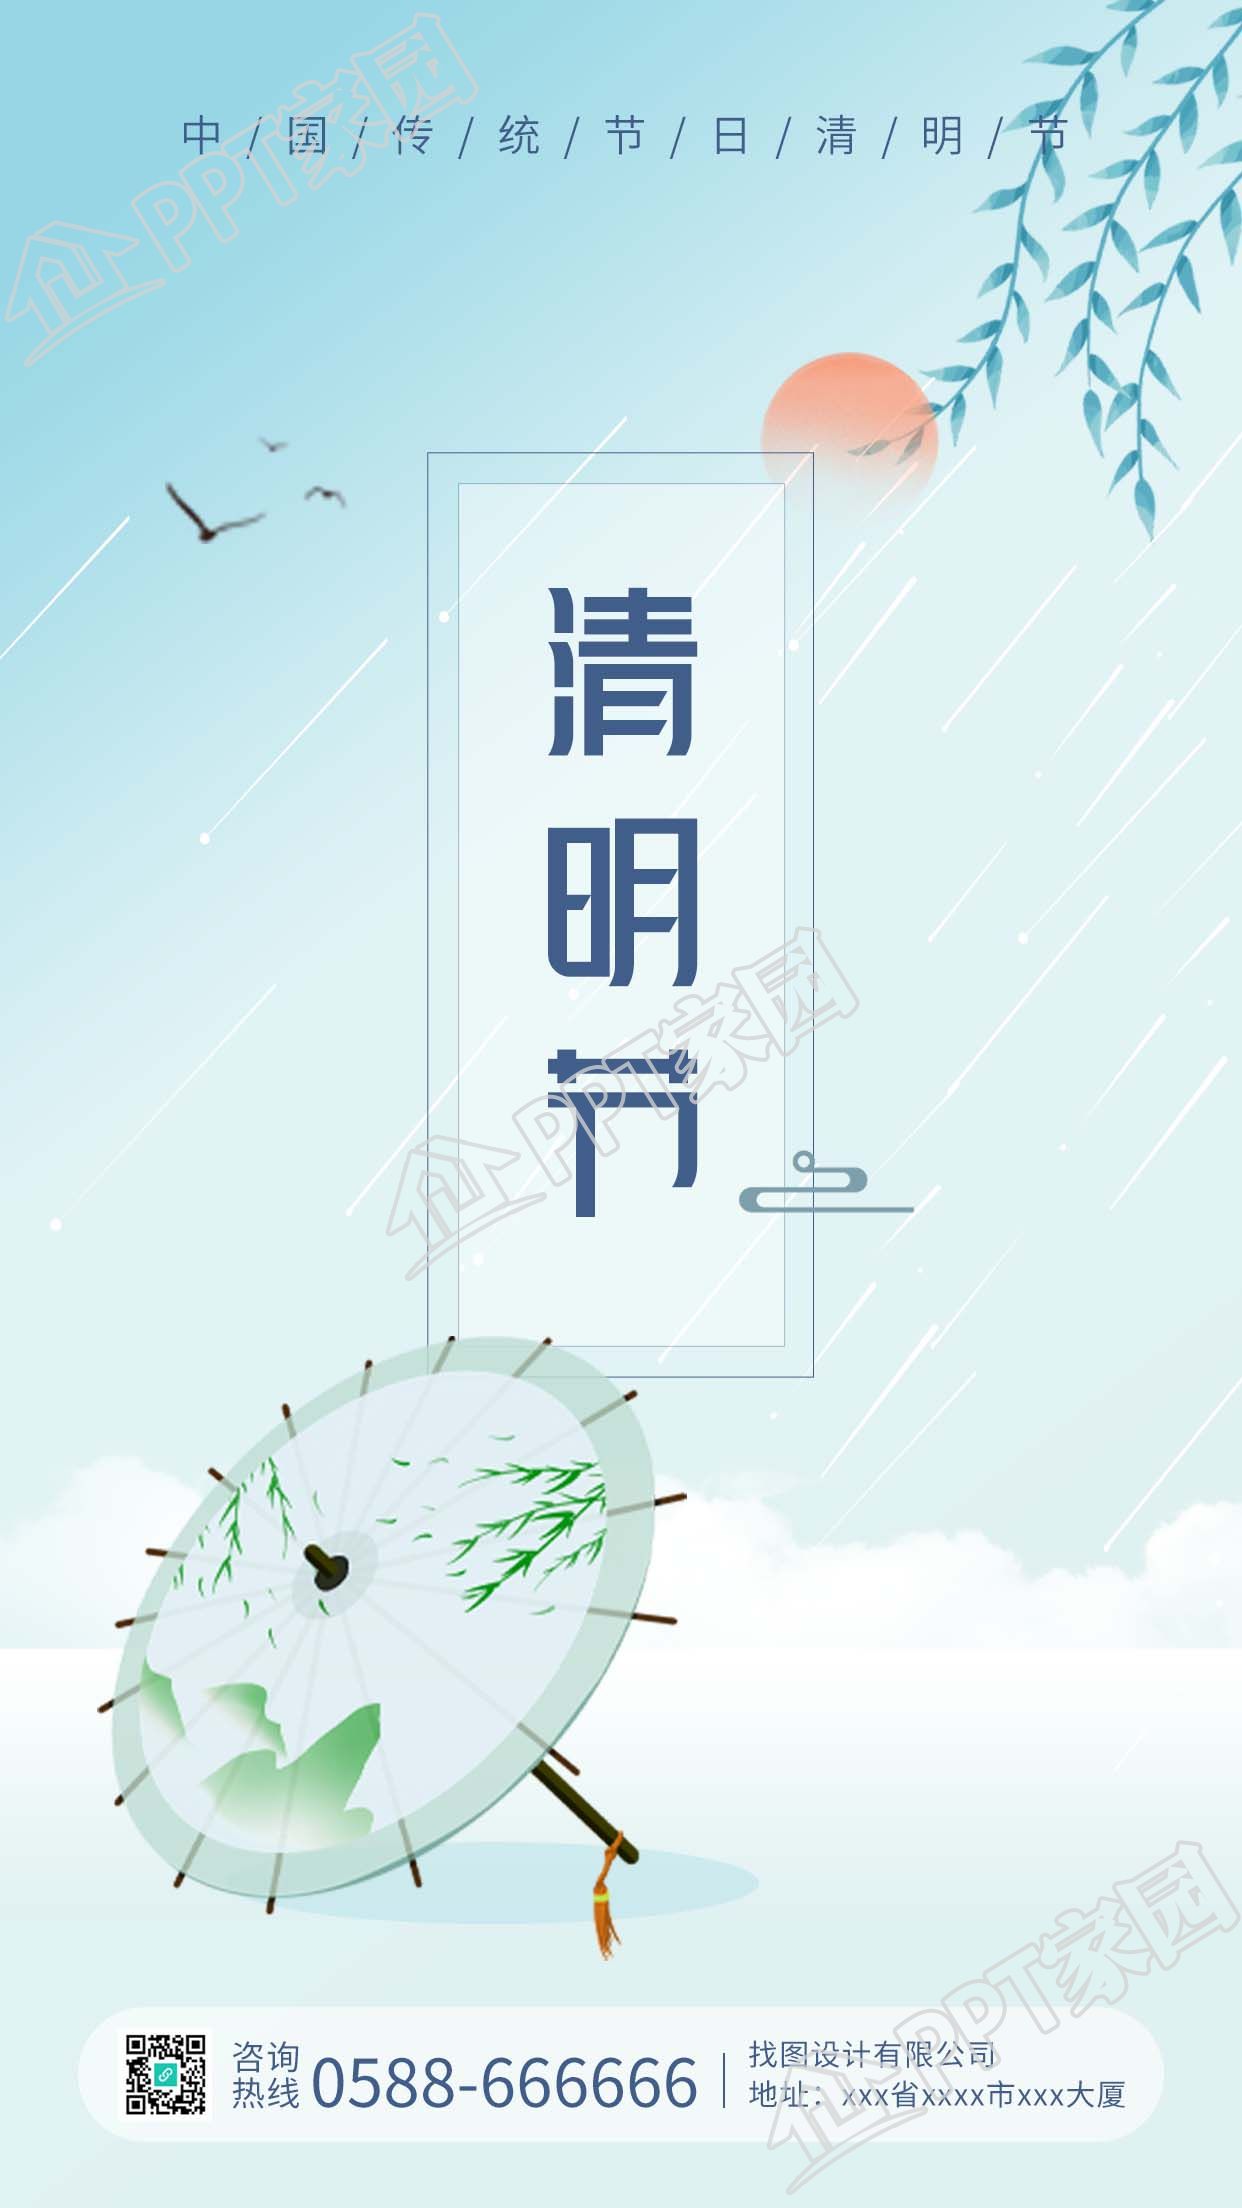 中國風清明節傳統節日圖片手機海報下載推薦